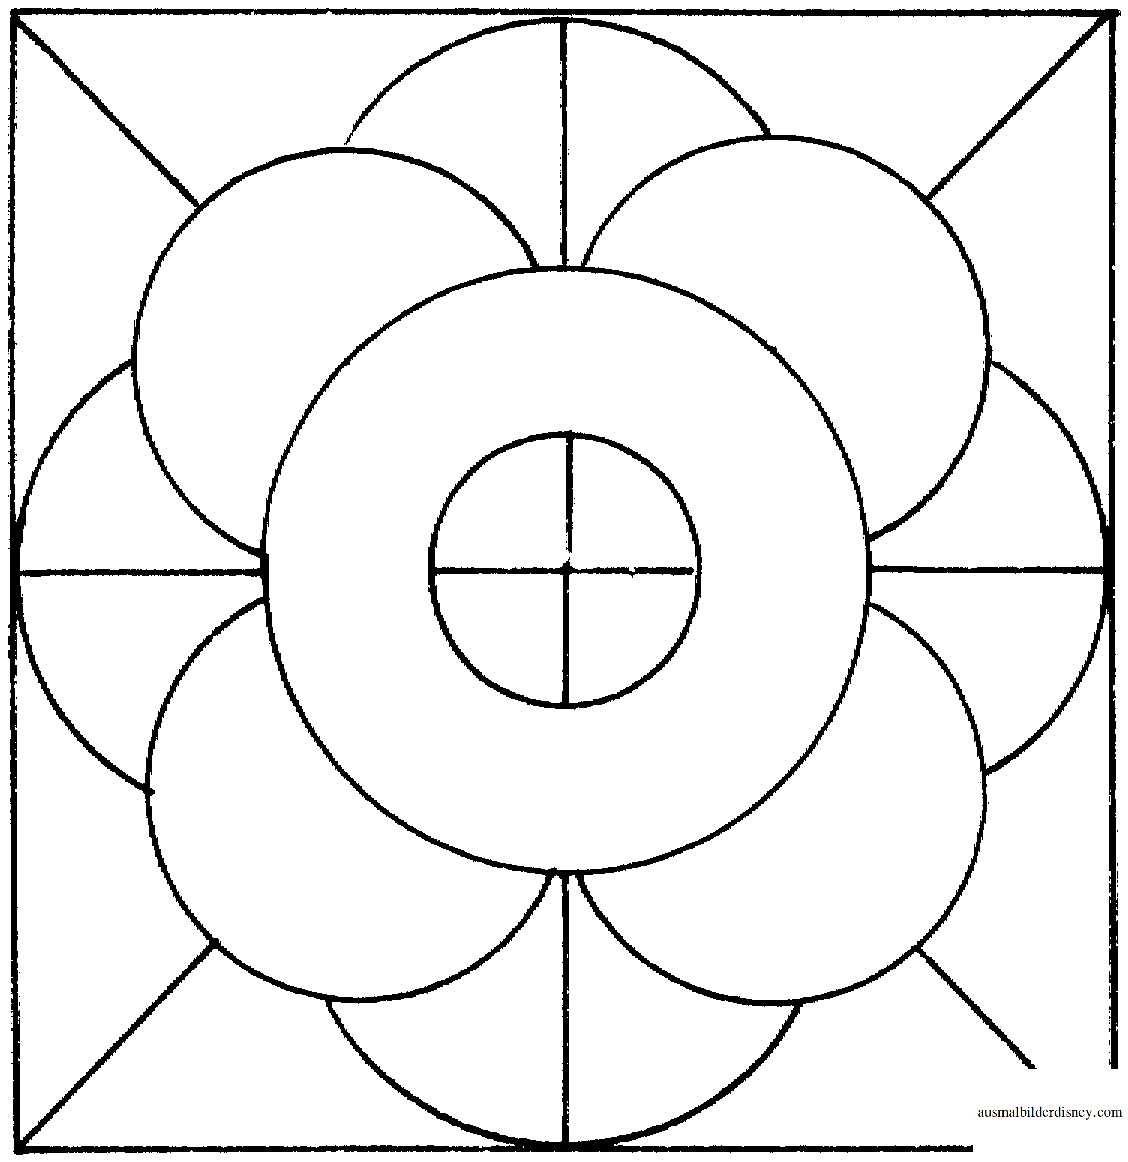 Симметричный узор в квадрате